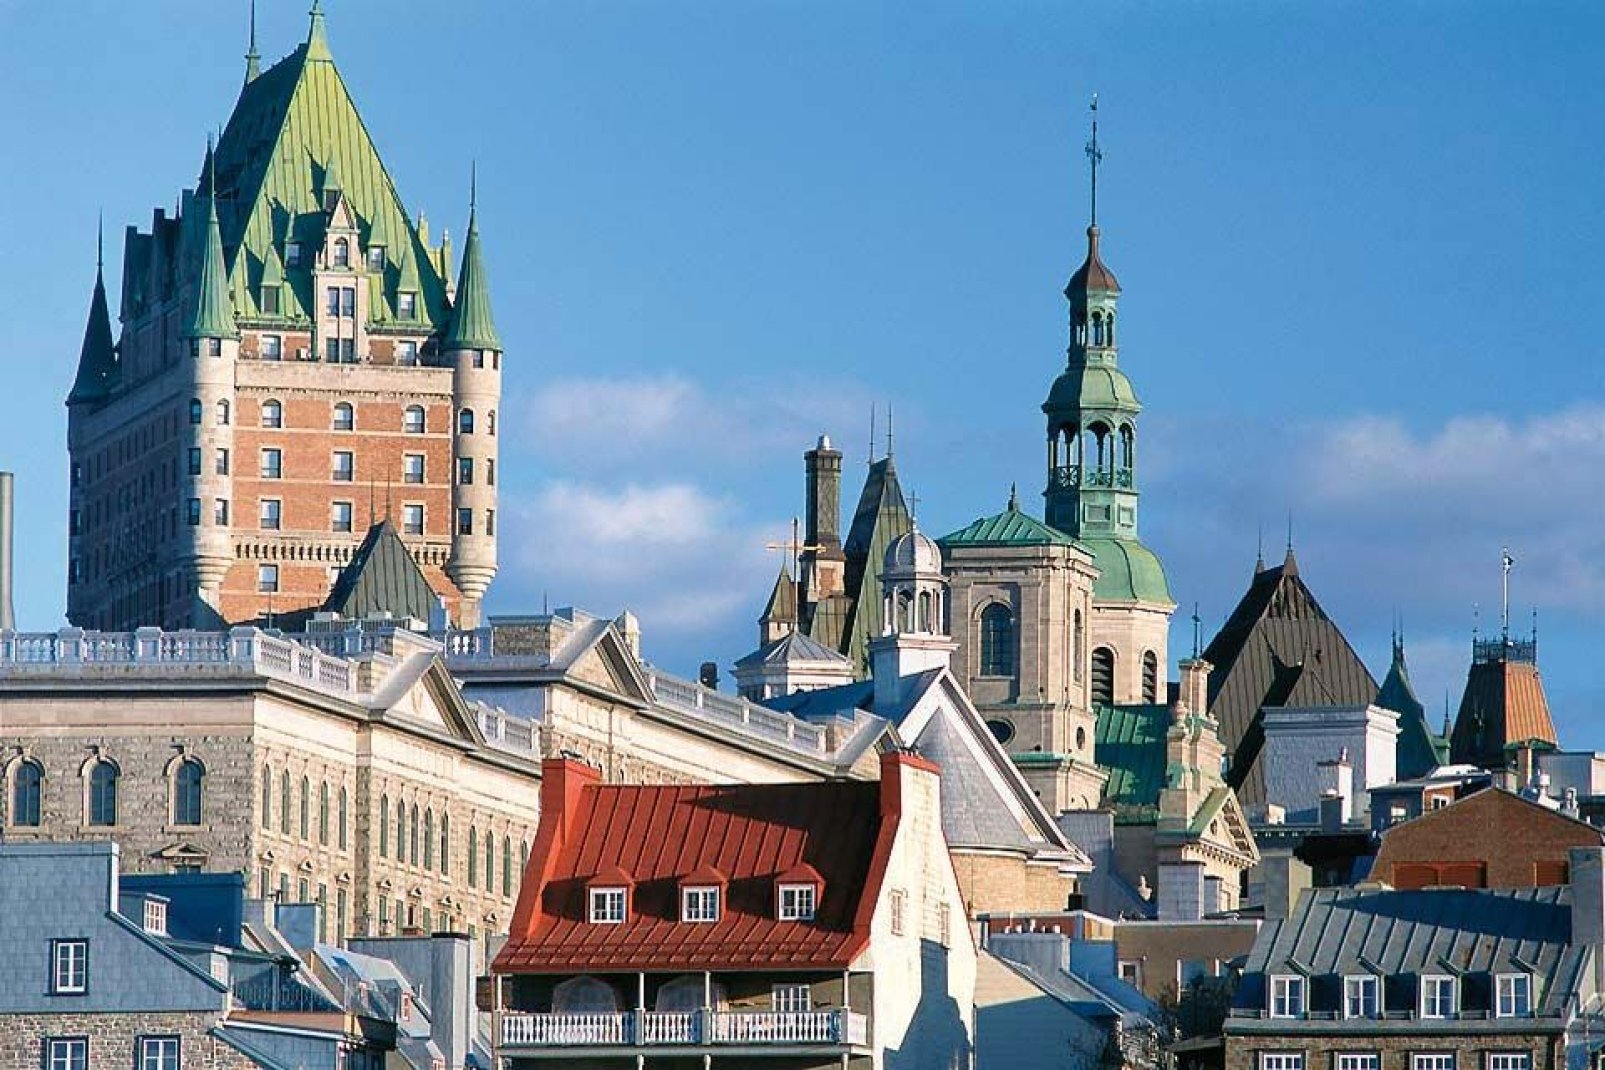 Quebec, cuna de la civilización francesa en América del Norte, está inscrita en la lista del patrimonio mundial de la UNESCO.